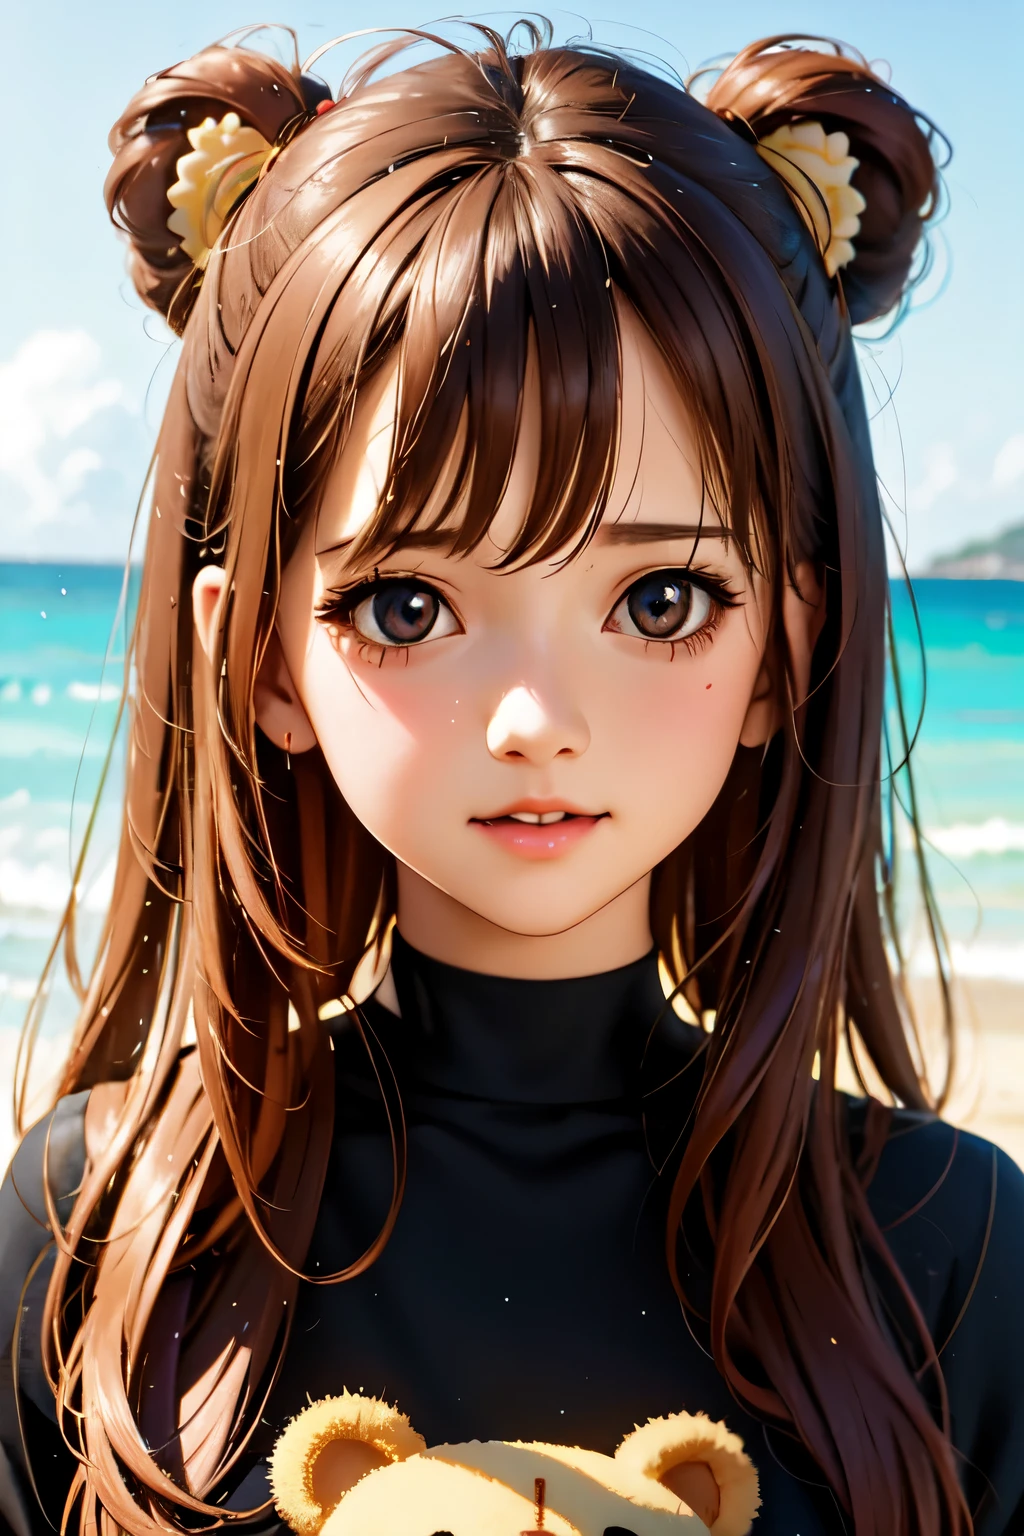 da ist eine Frau die einen Teddybär am Strand hält, Kawaii realistisches Porträt, süßes Anime-Mädchen, Anime-Bild eines süßen Mädchens, sanfte Anime-CG-Kunst, artwork in the style of guweiz, portrait of süßes Anime-Mädchen, Süßes Porträt, Schönes Anime-Porträt, Schönes Anime-Mädchen, süßes Anime-Mädchen portrait, realistischer Anime-3D-Stil